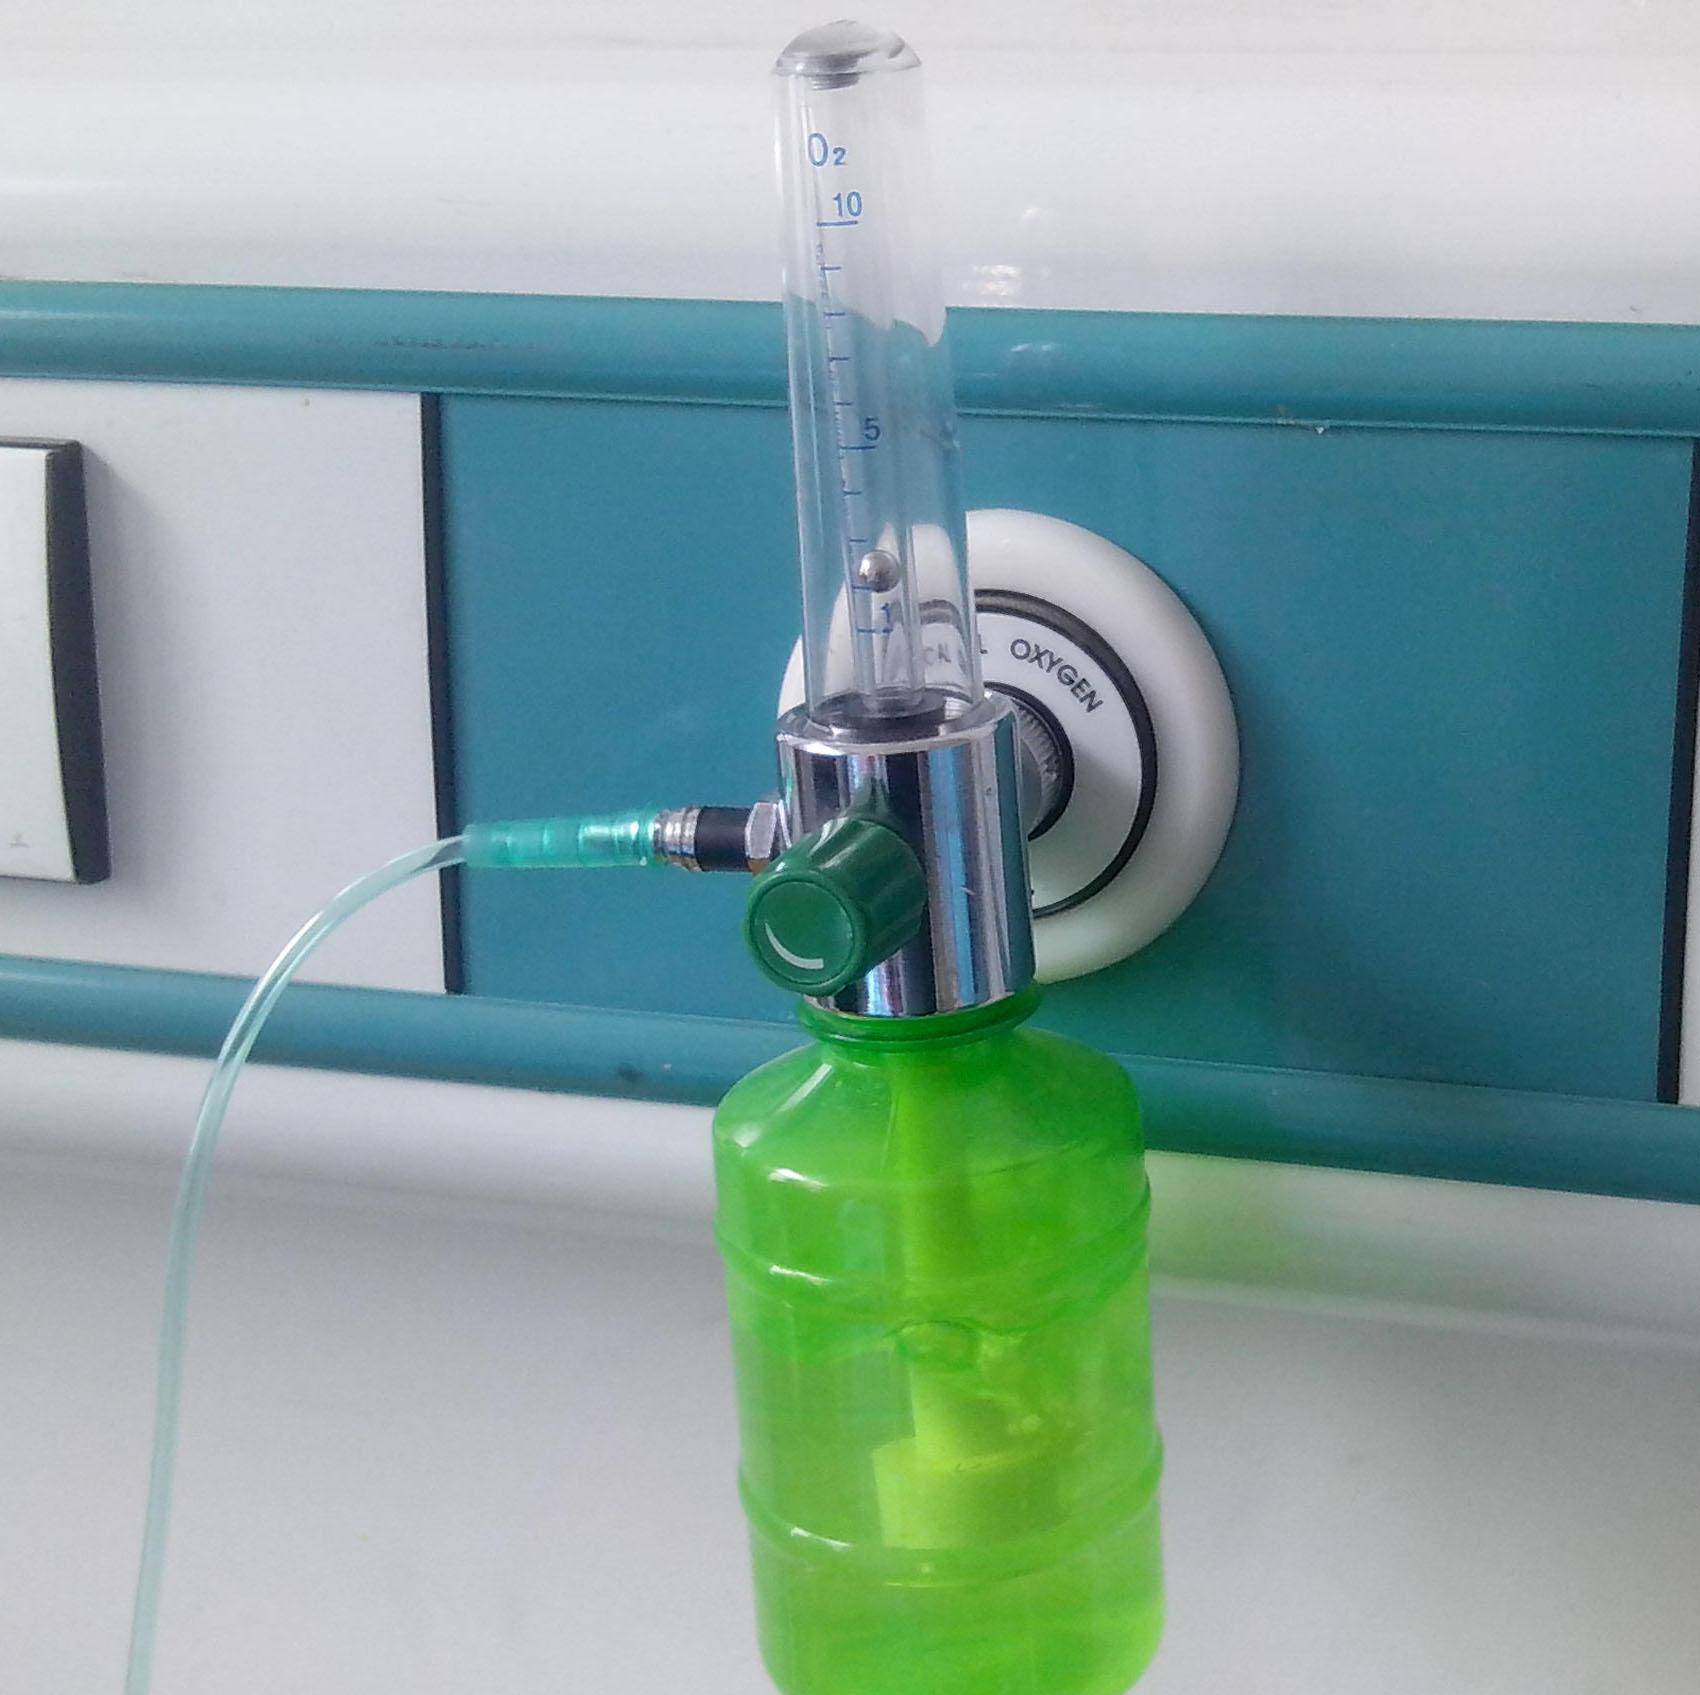 湿化瓶的水泡出现,说明是有氧气存在的,并且气泡越激烈,说明氧气流量